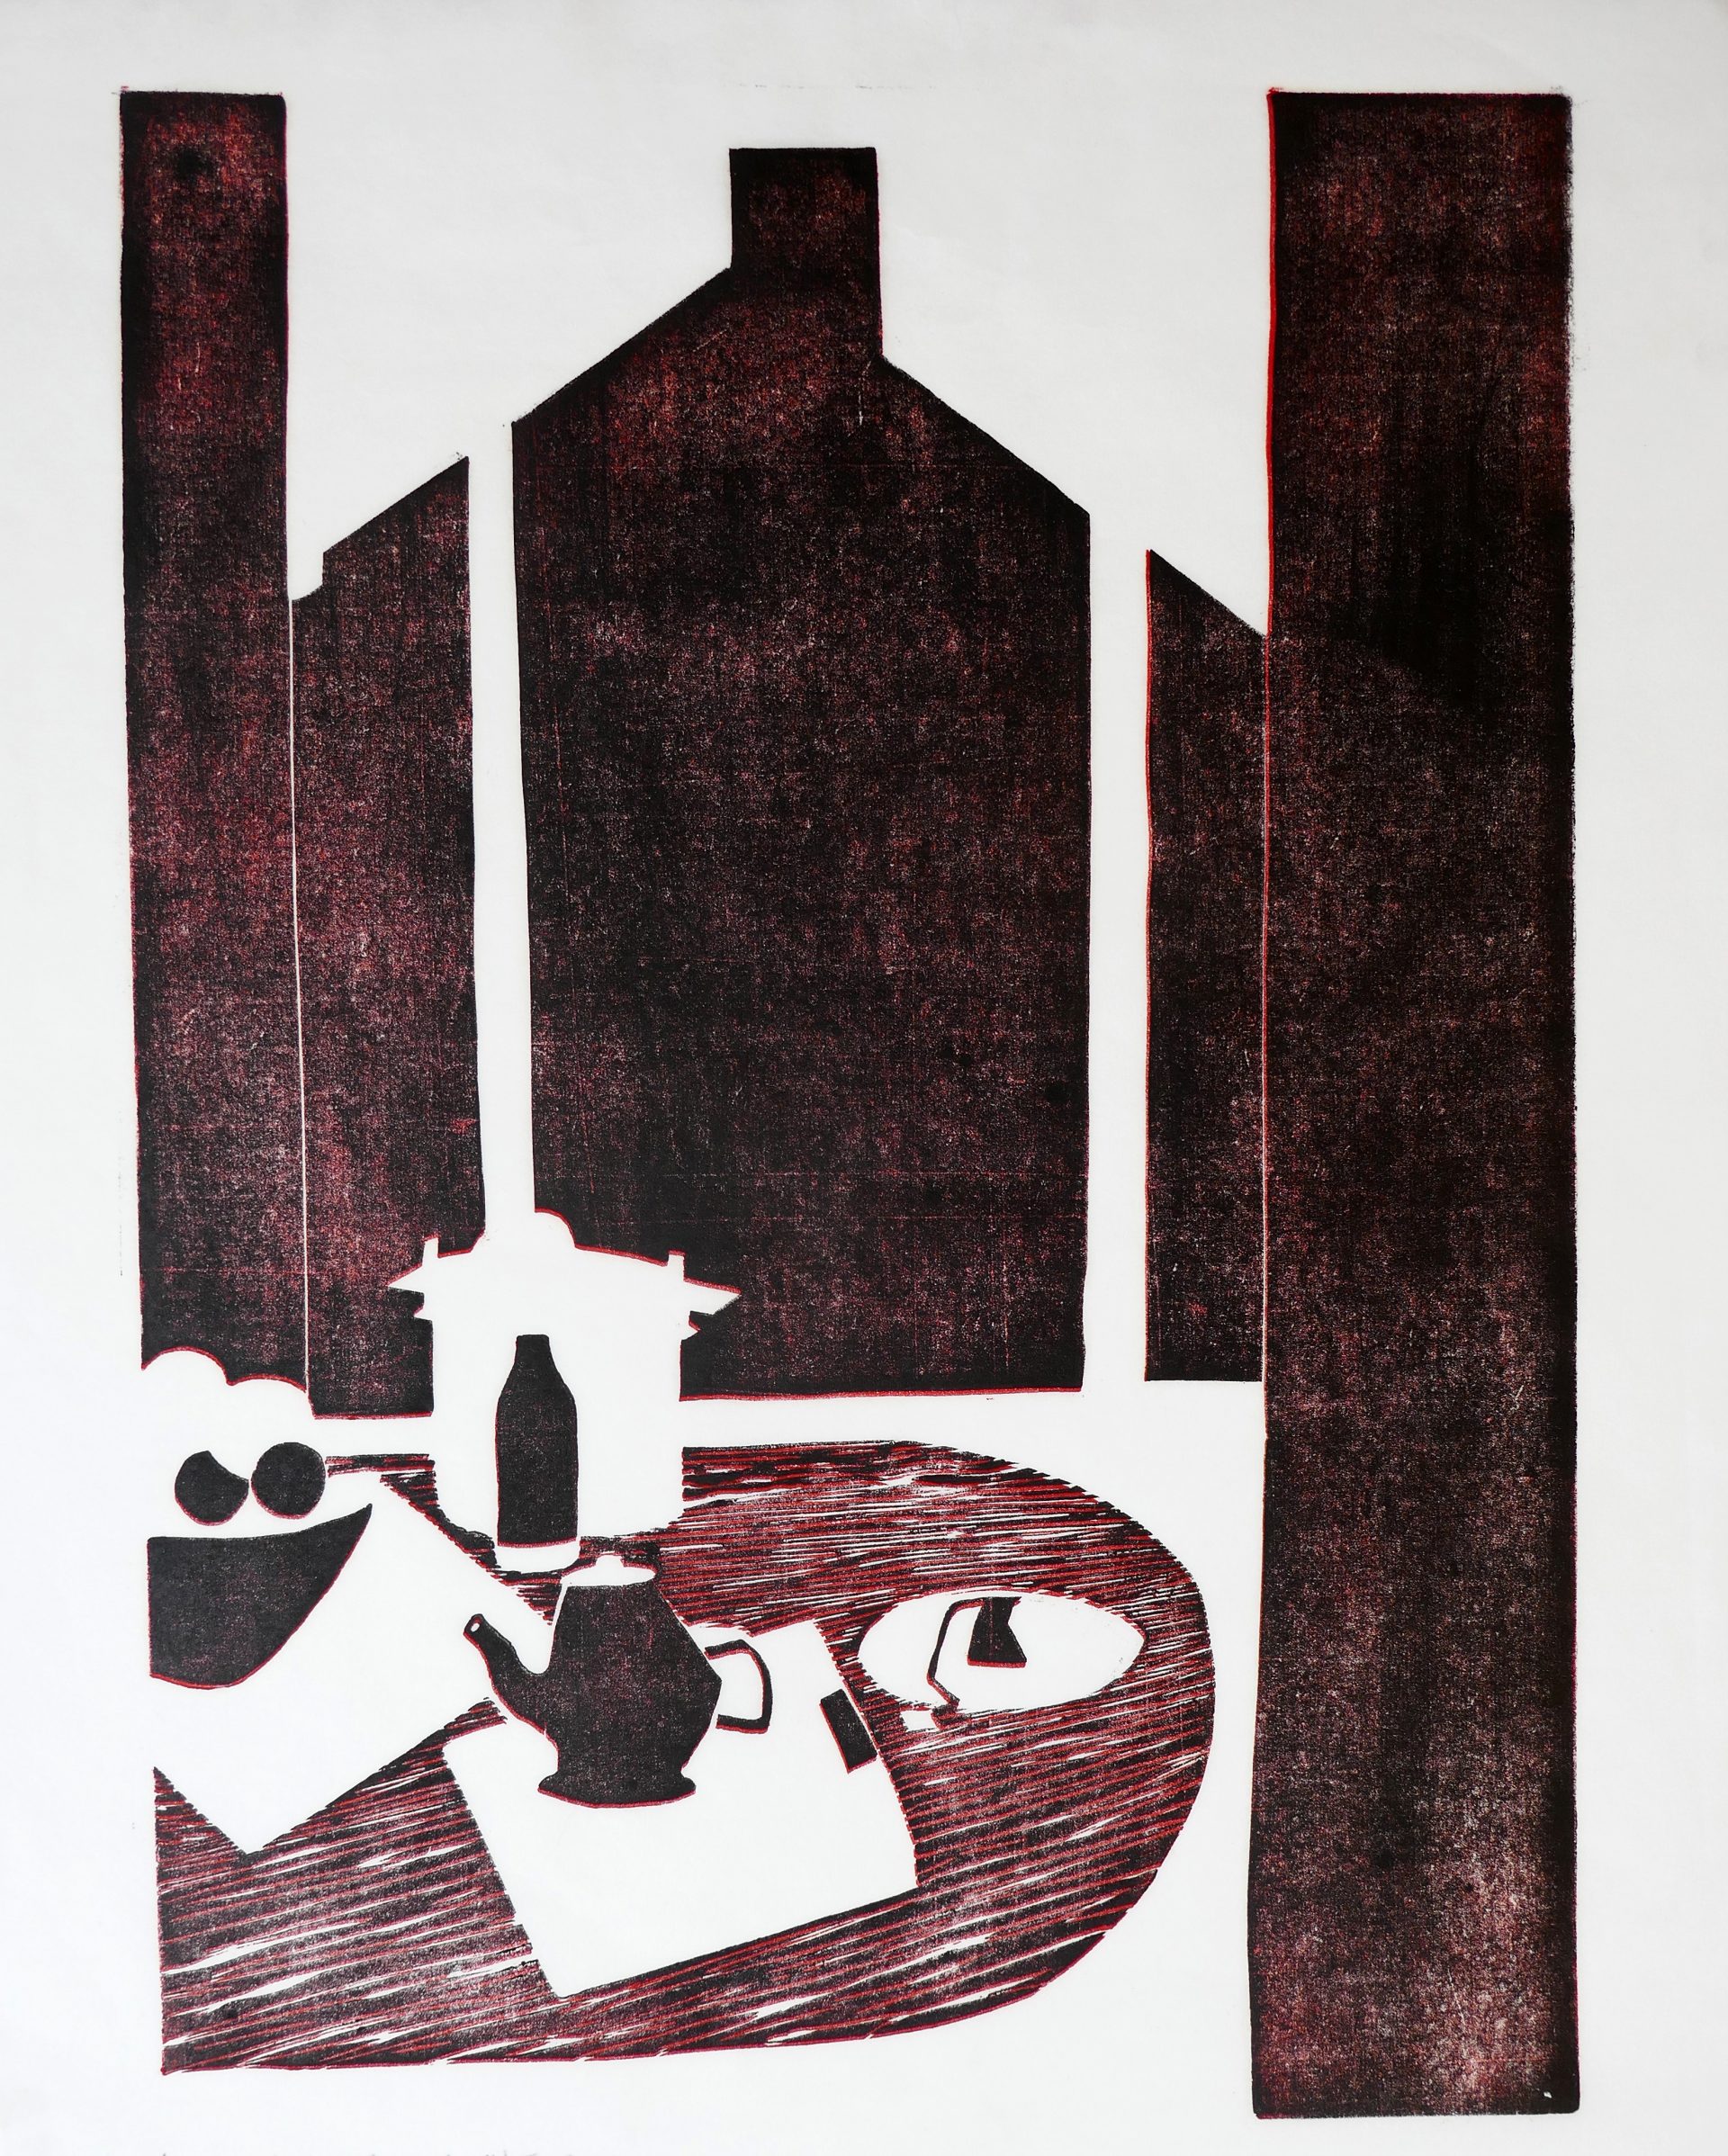 Vis-à-vis, 2021, handprinted linocut, image size 42,5x30 cm, paper size 45,5x37 cm, edition of 6